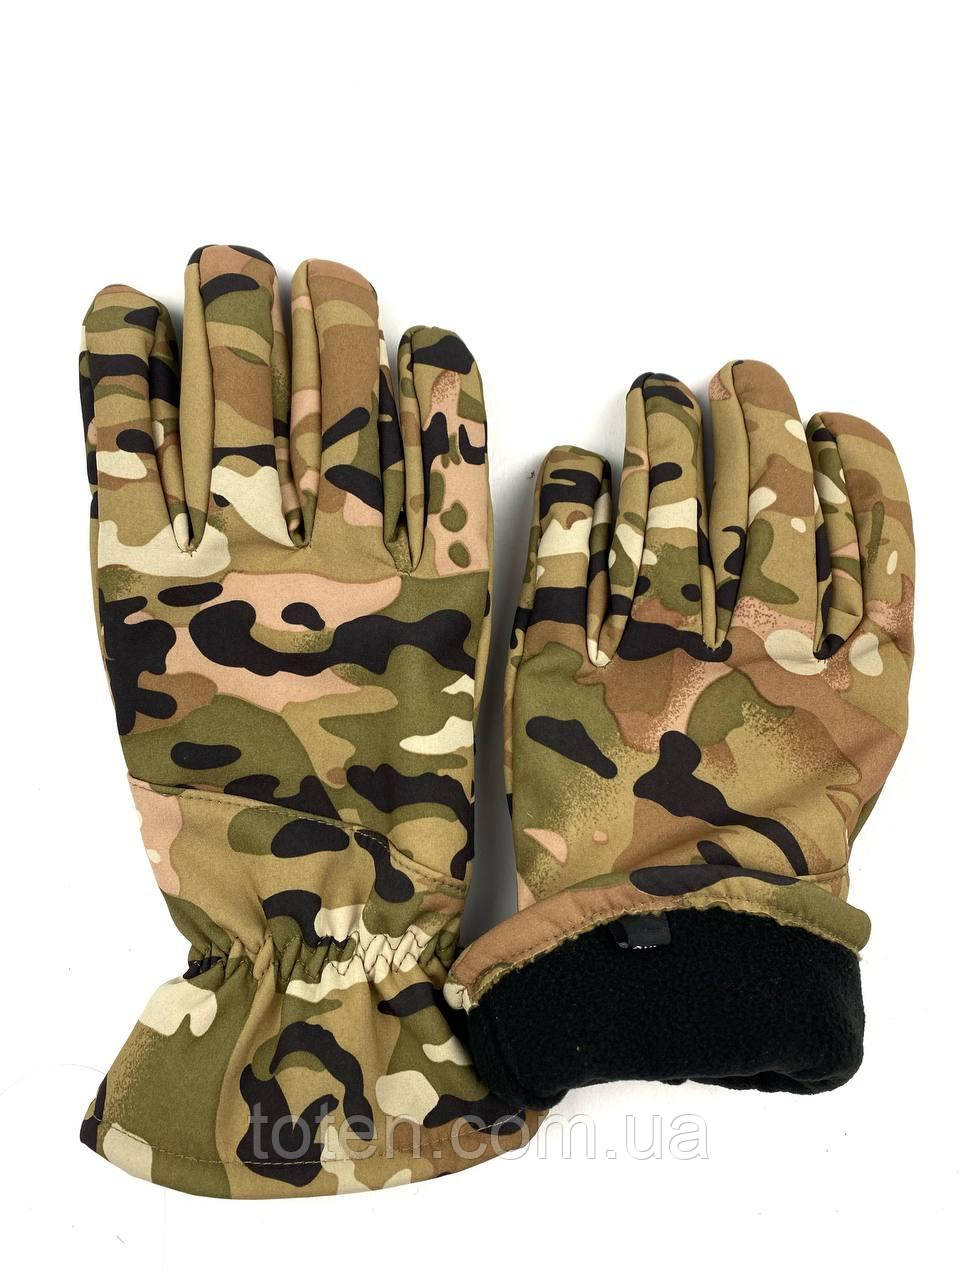 Армейские теплые перчатки ВСУ тактические полнопалые . Зимние .